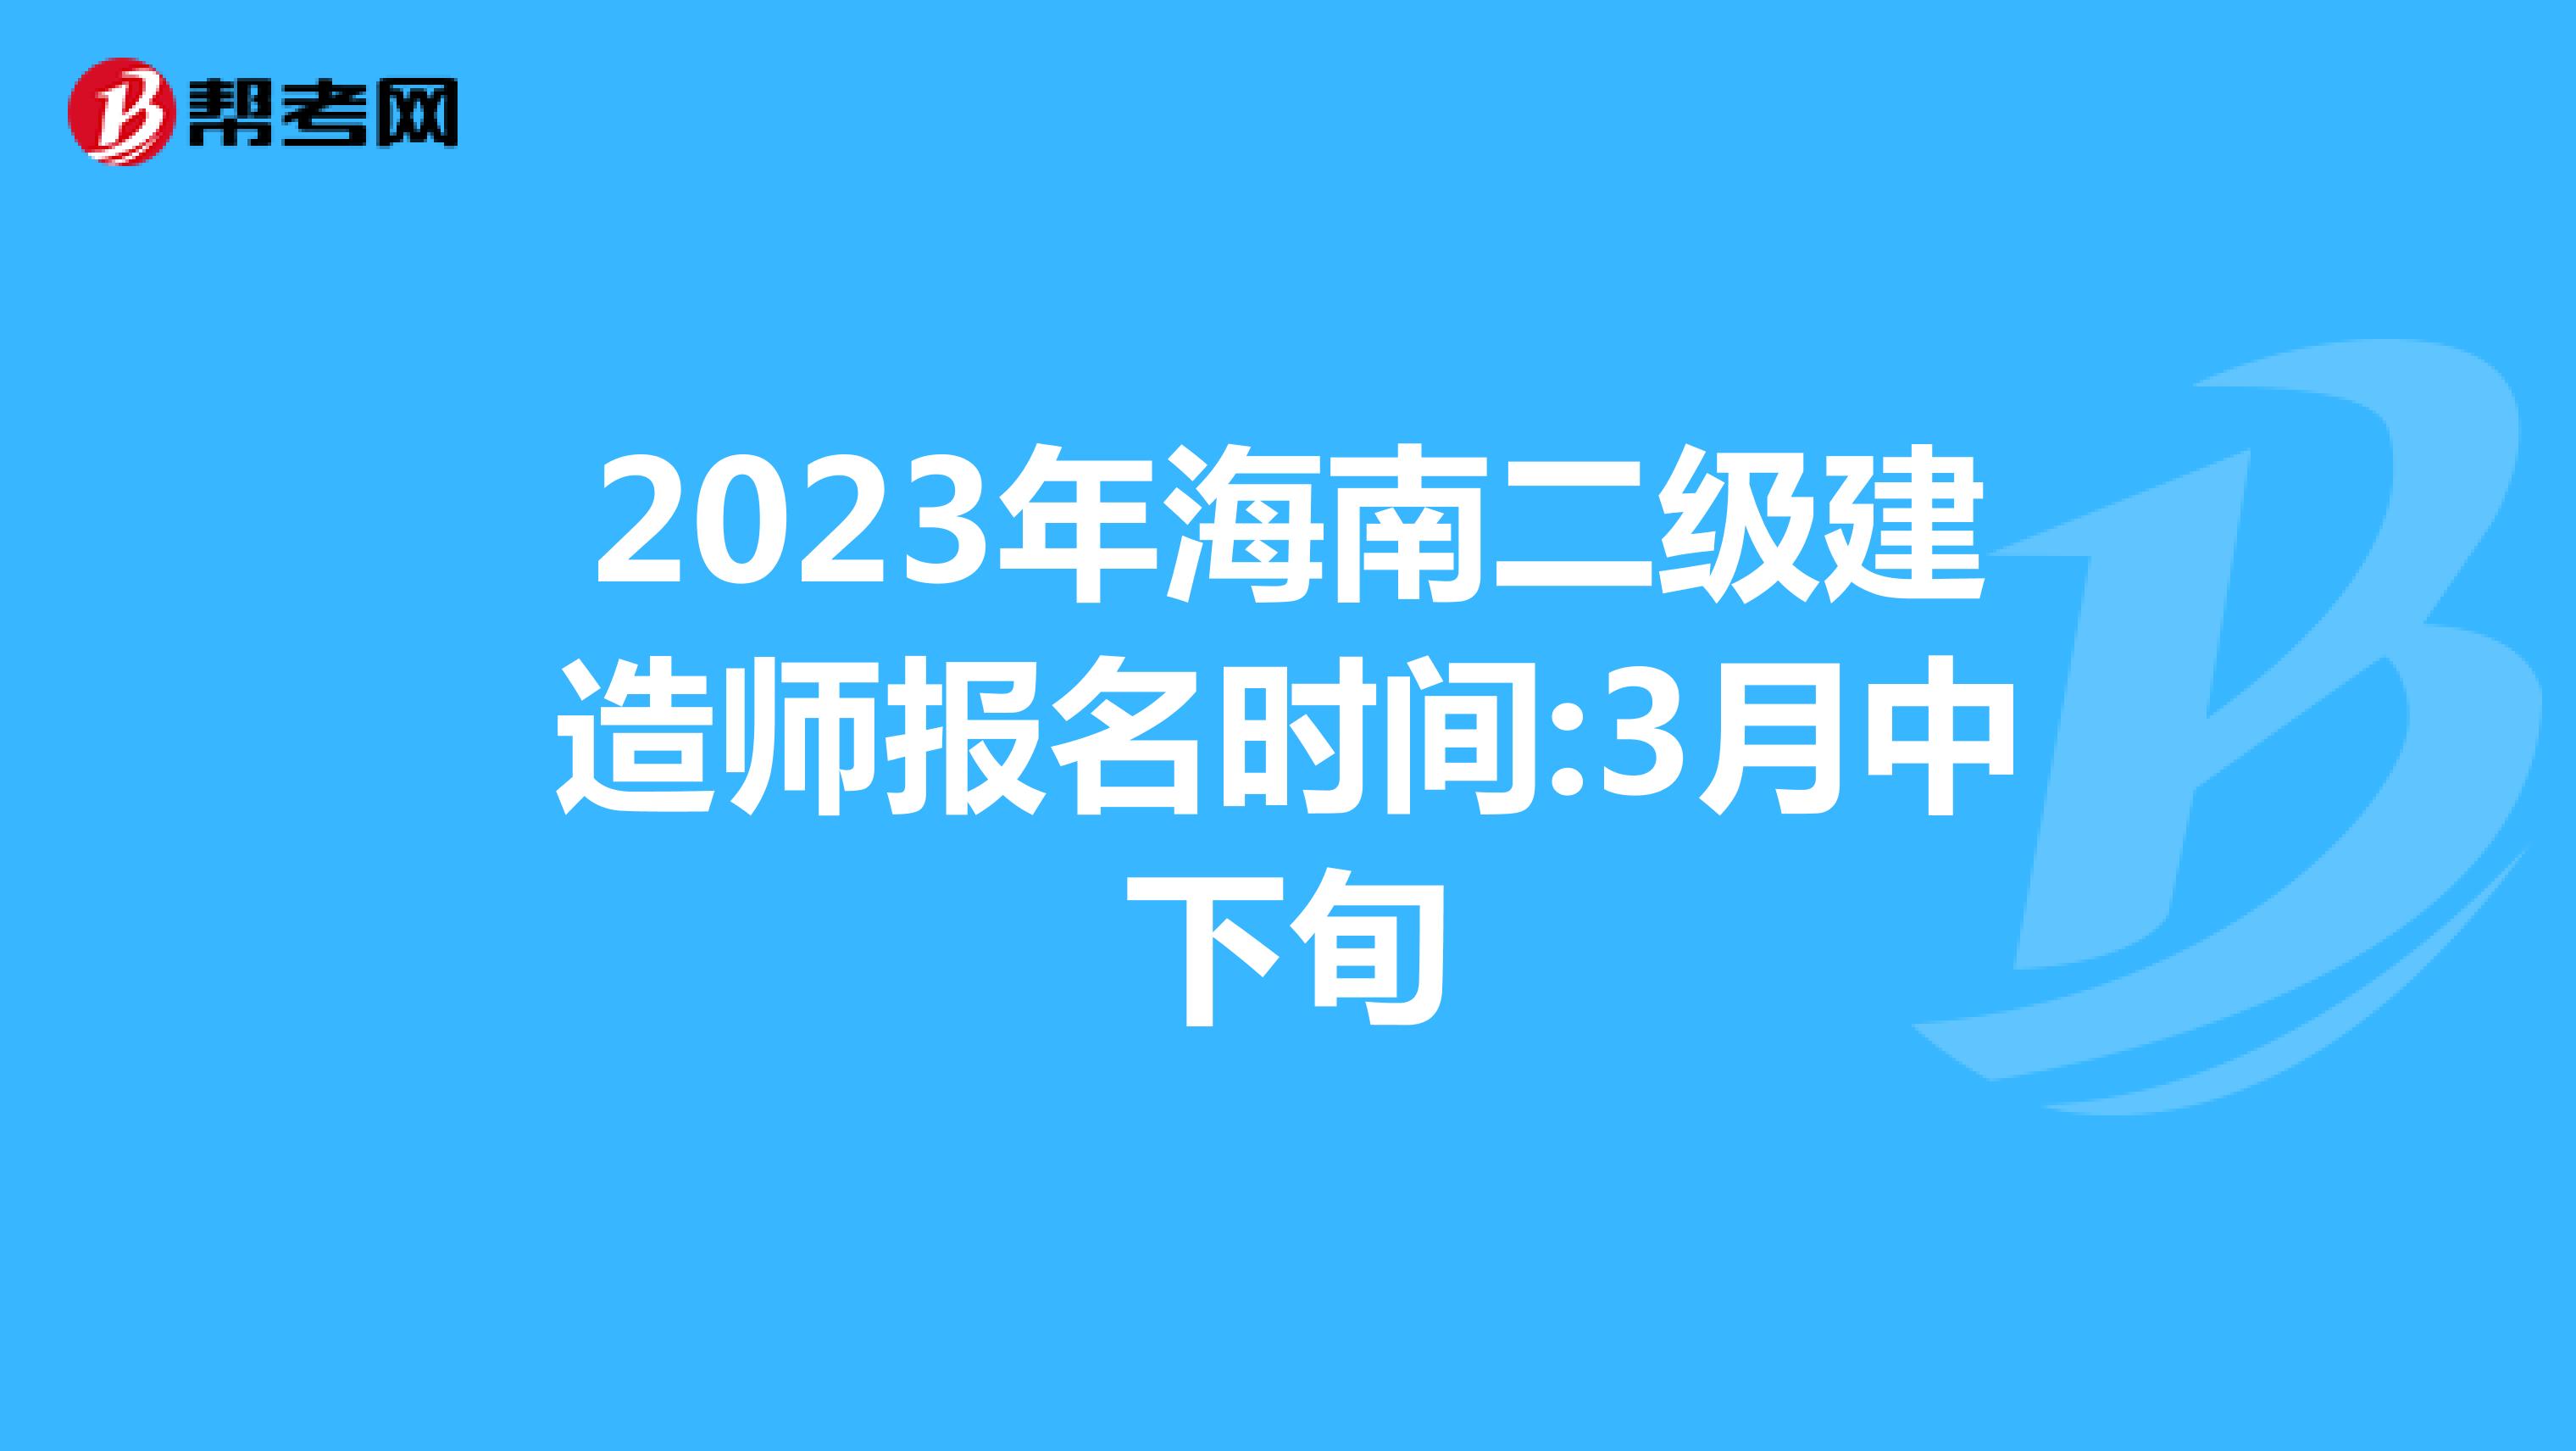 2023年海南二级建造师报名时间:3月中下旬